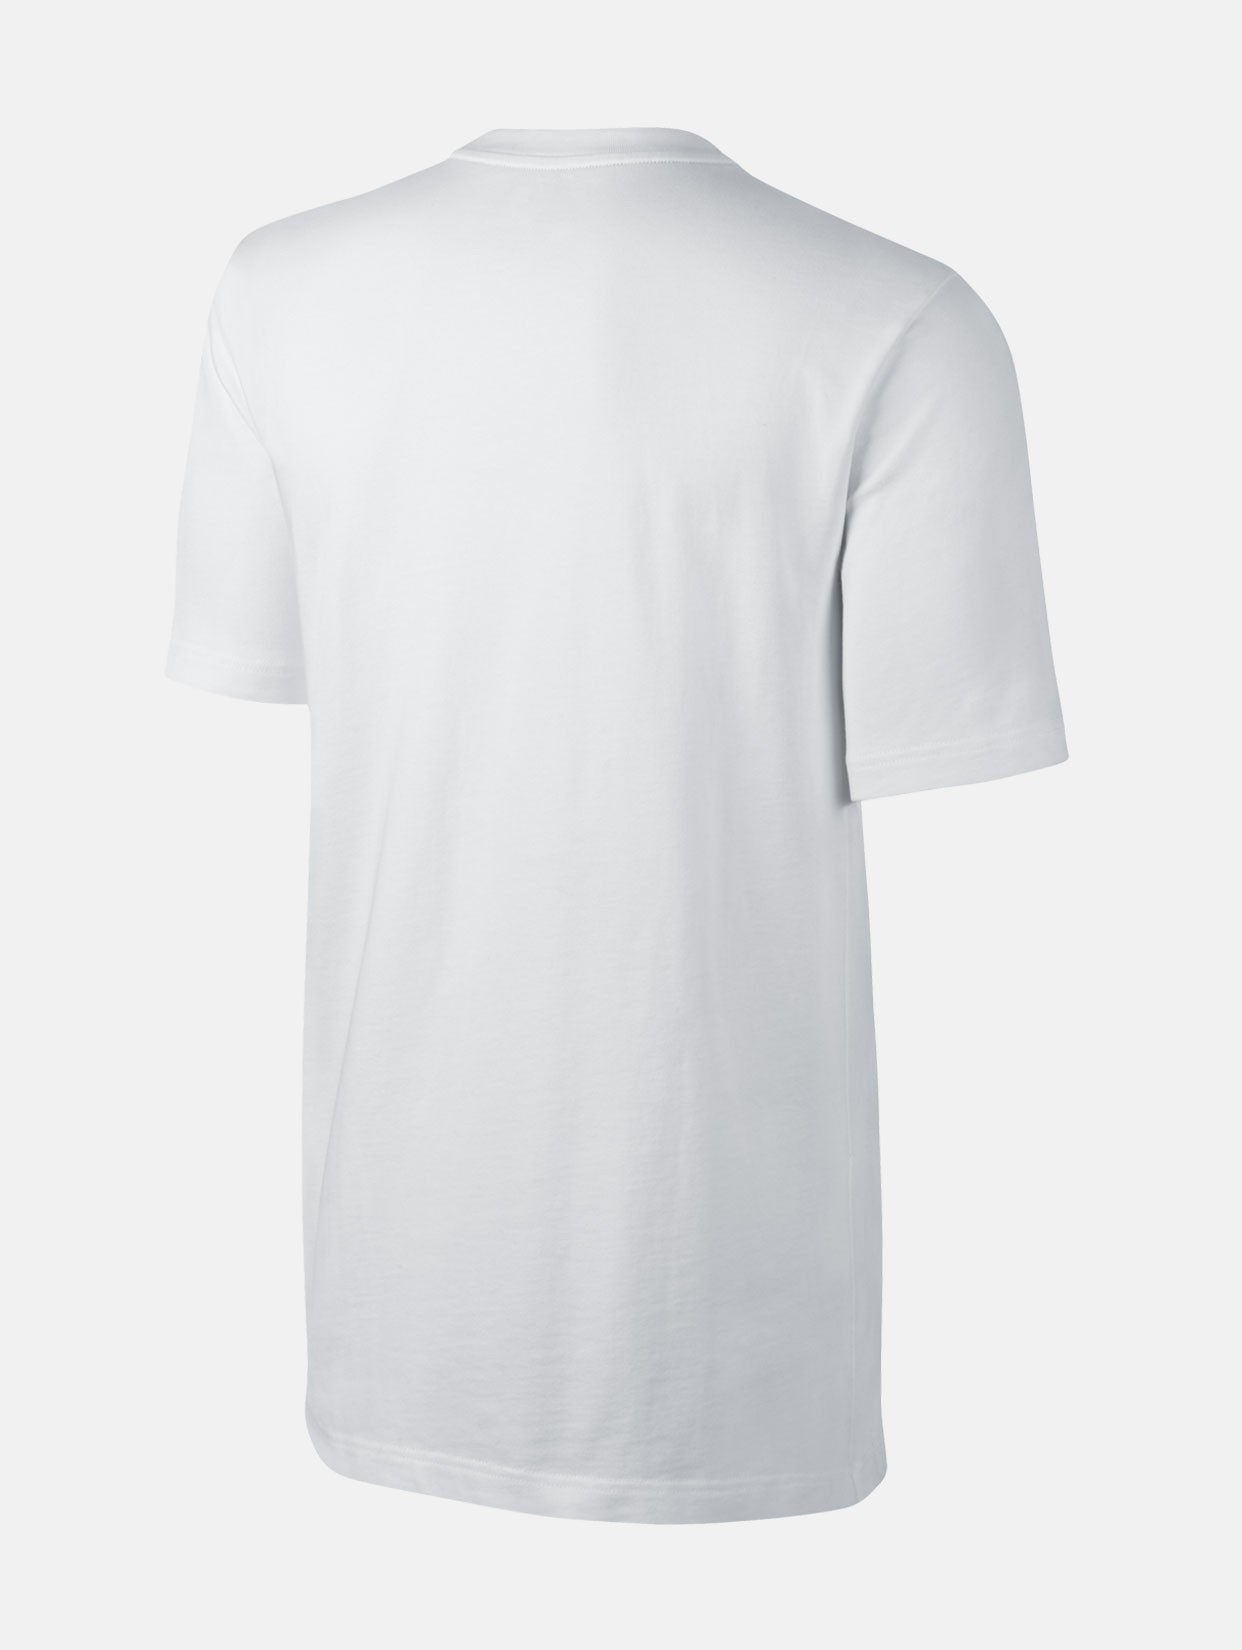 T-Shirt Nike SB Heavyweight Cherry Blossom Poc. white